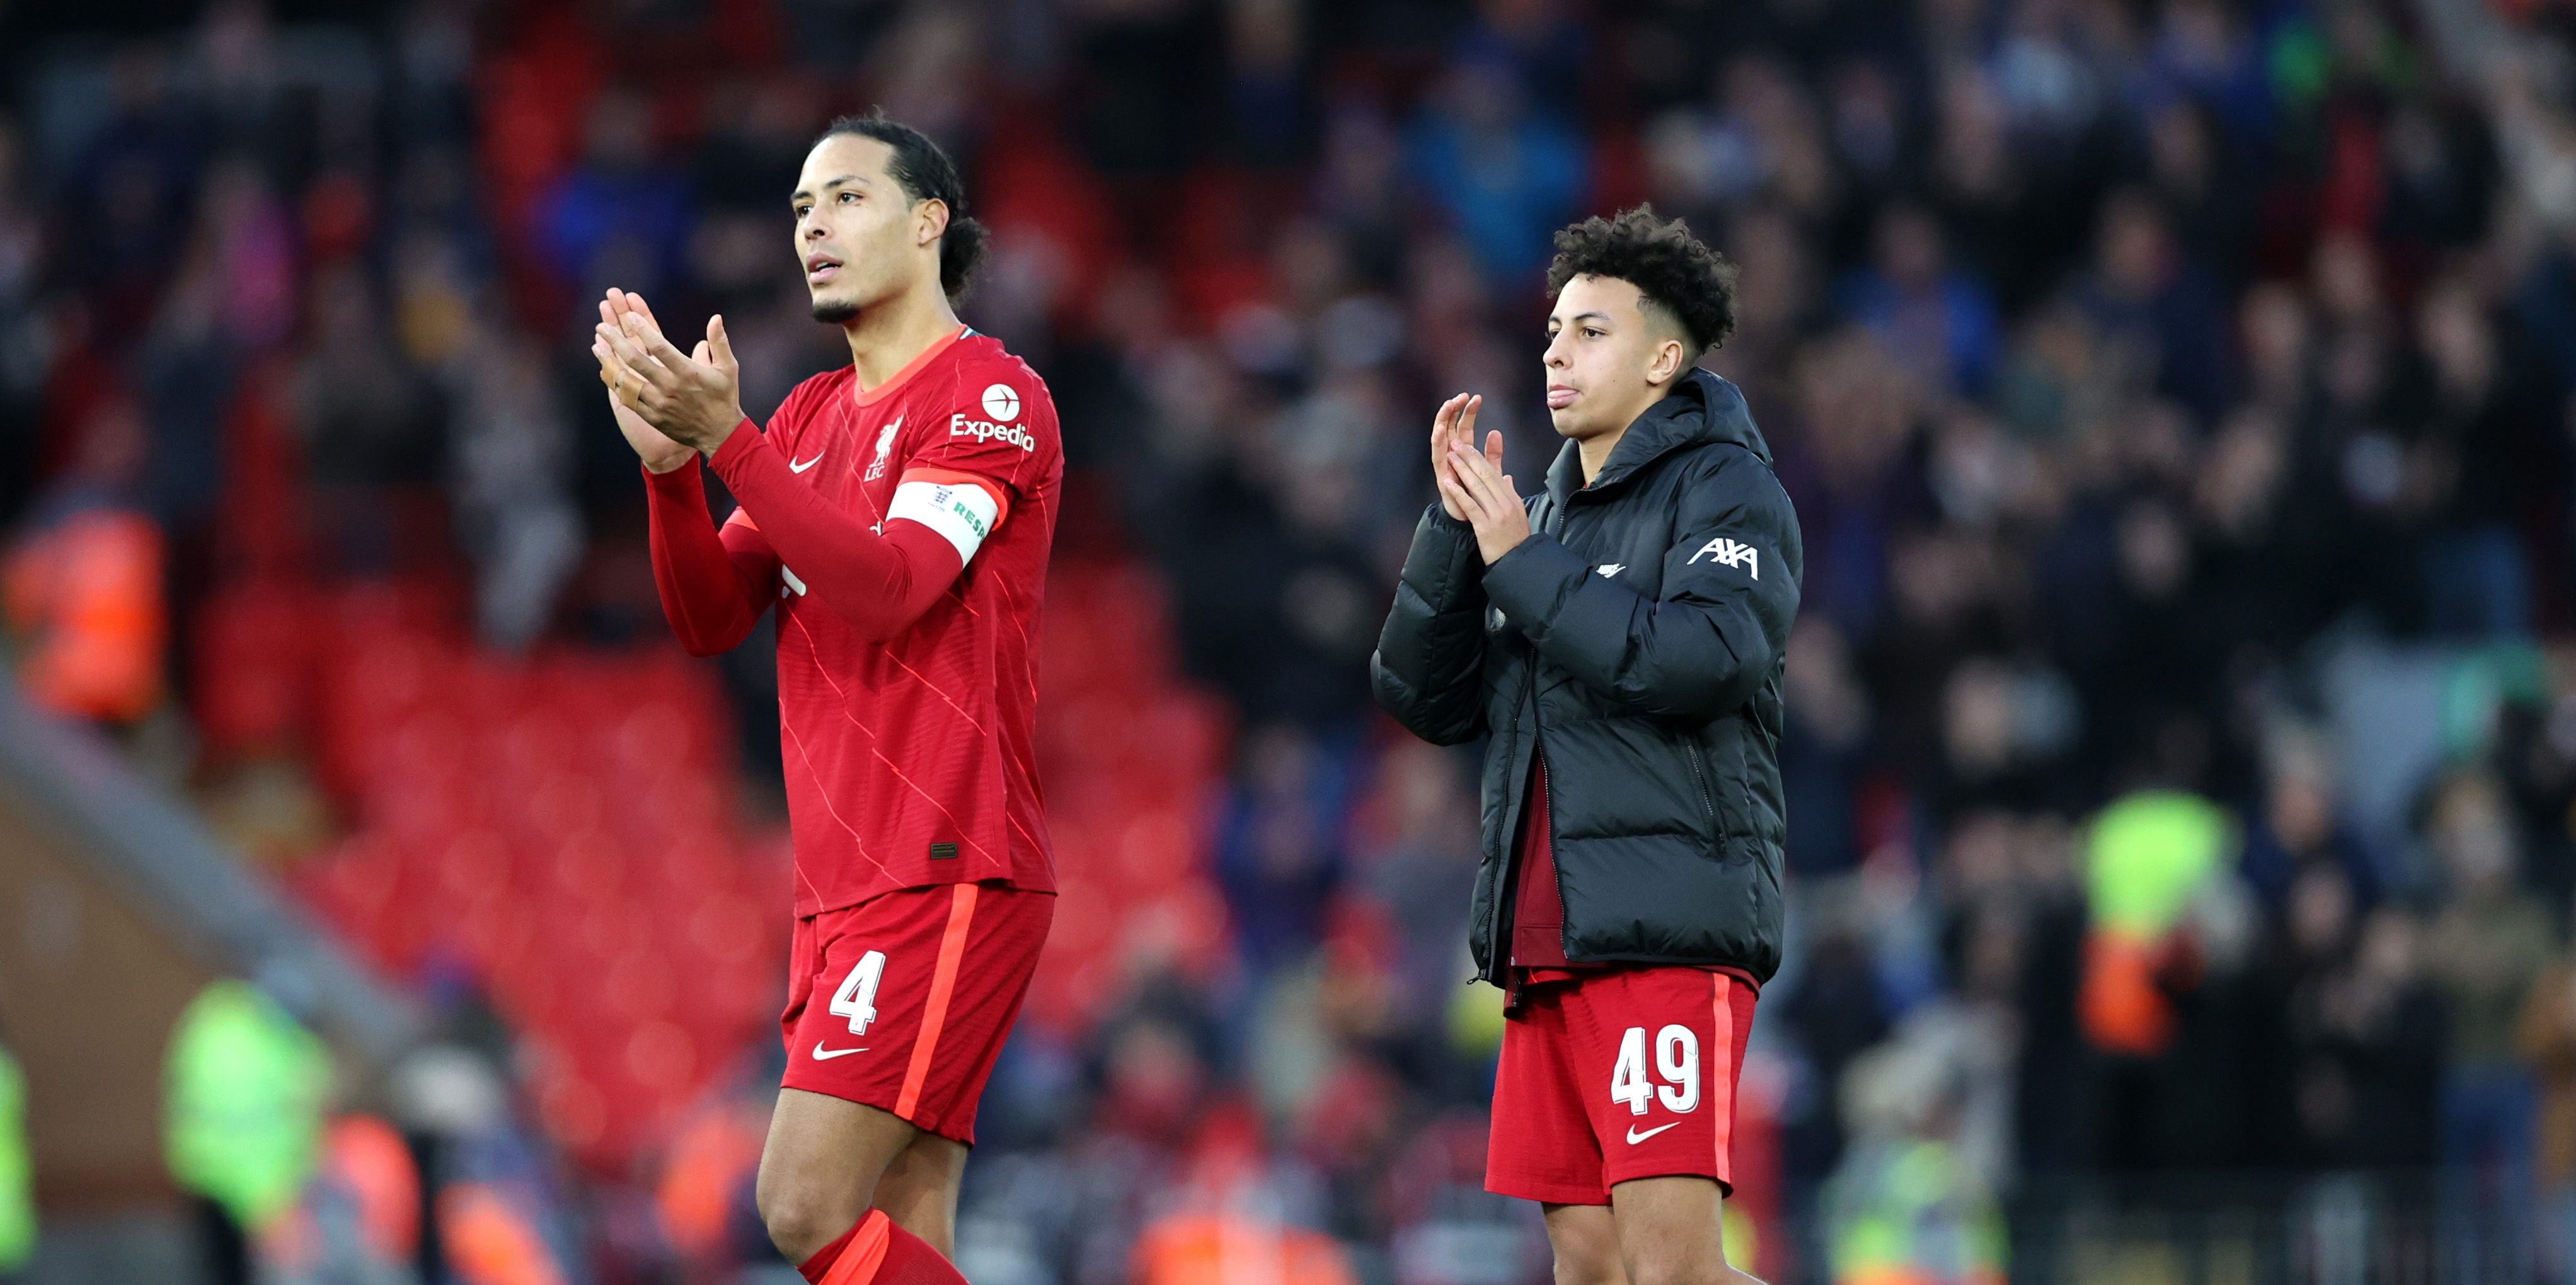 Virgil van Dijk shows he’s a gentleman with post-match gesture after Liverpool beat Shrewsbury